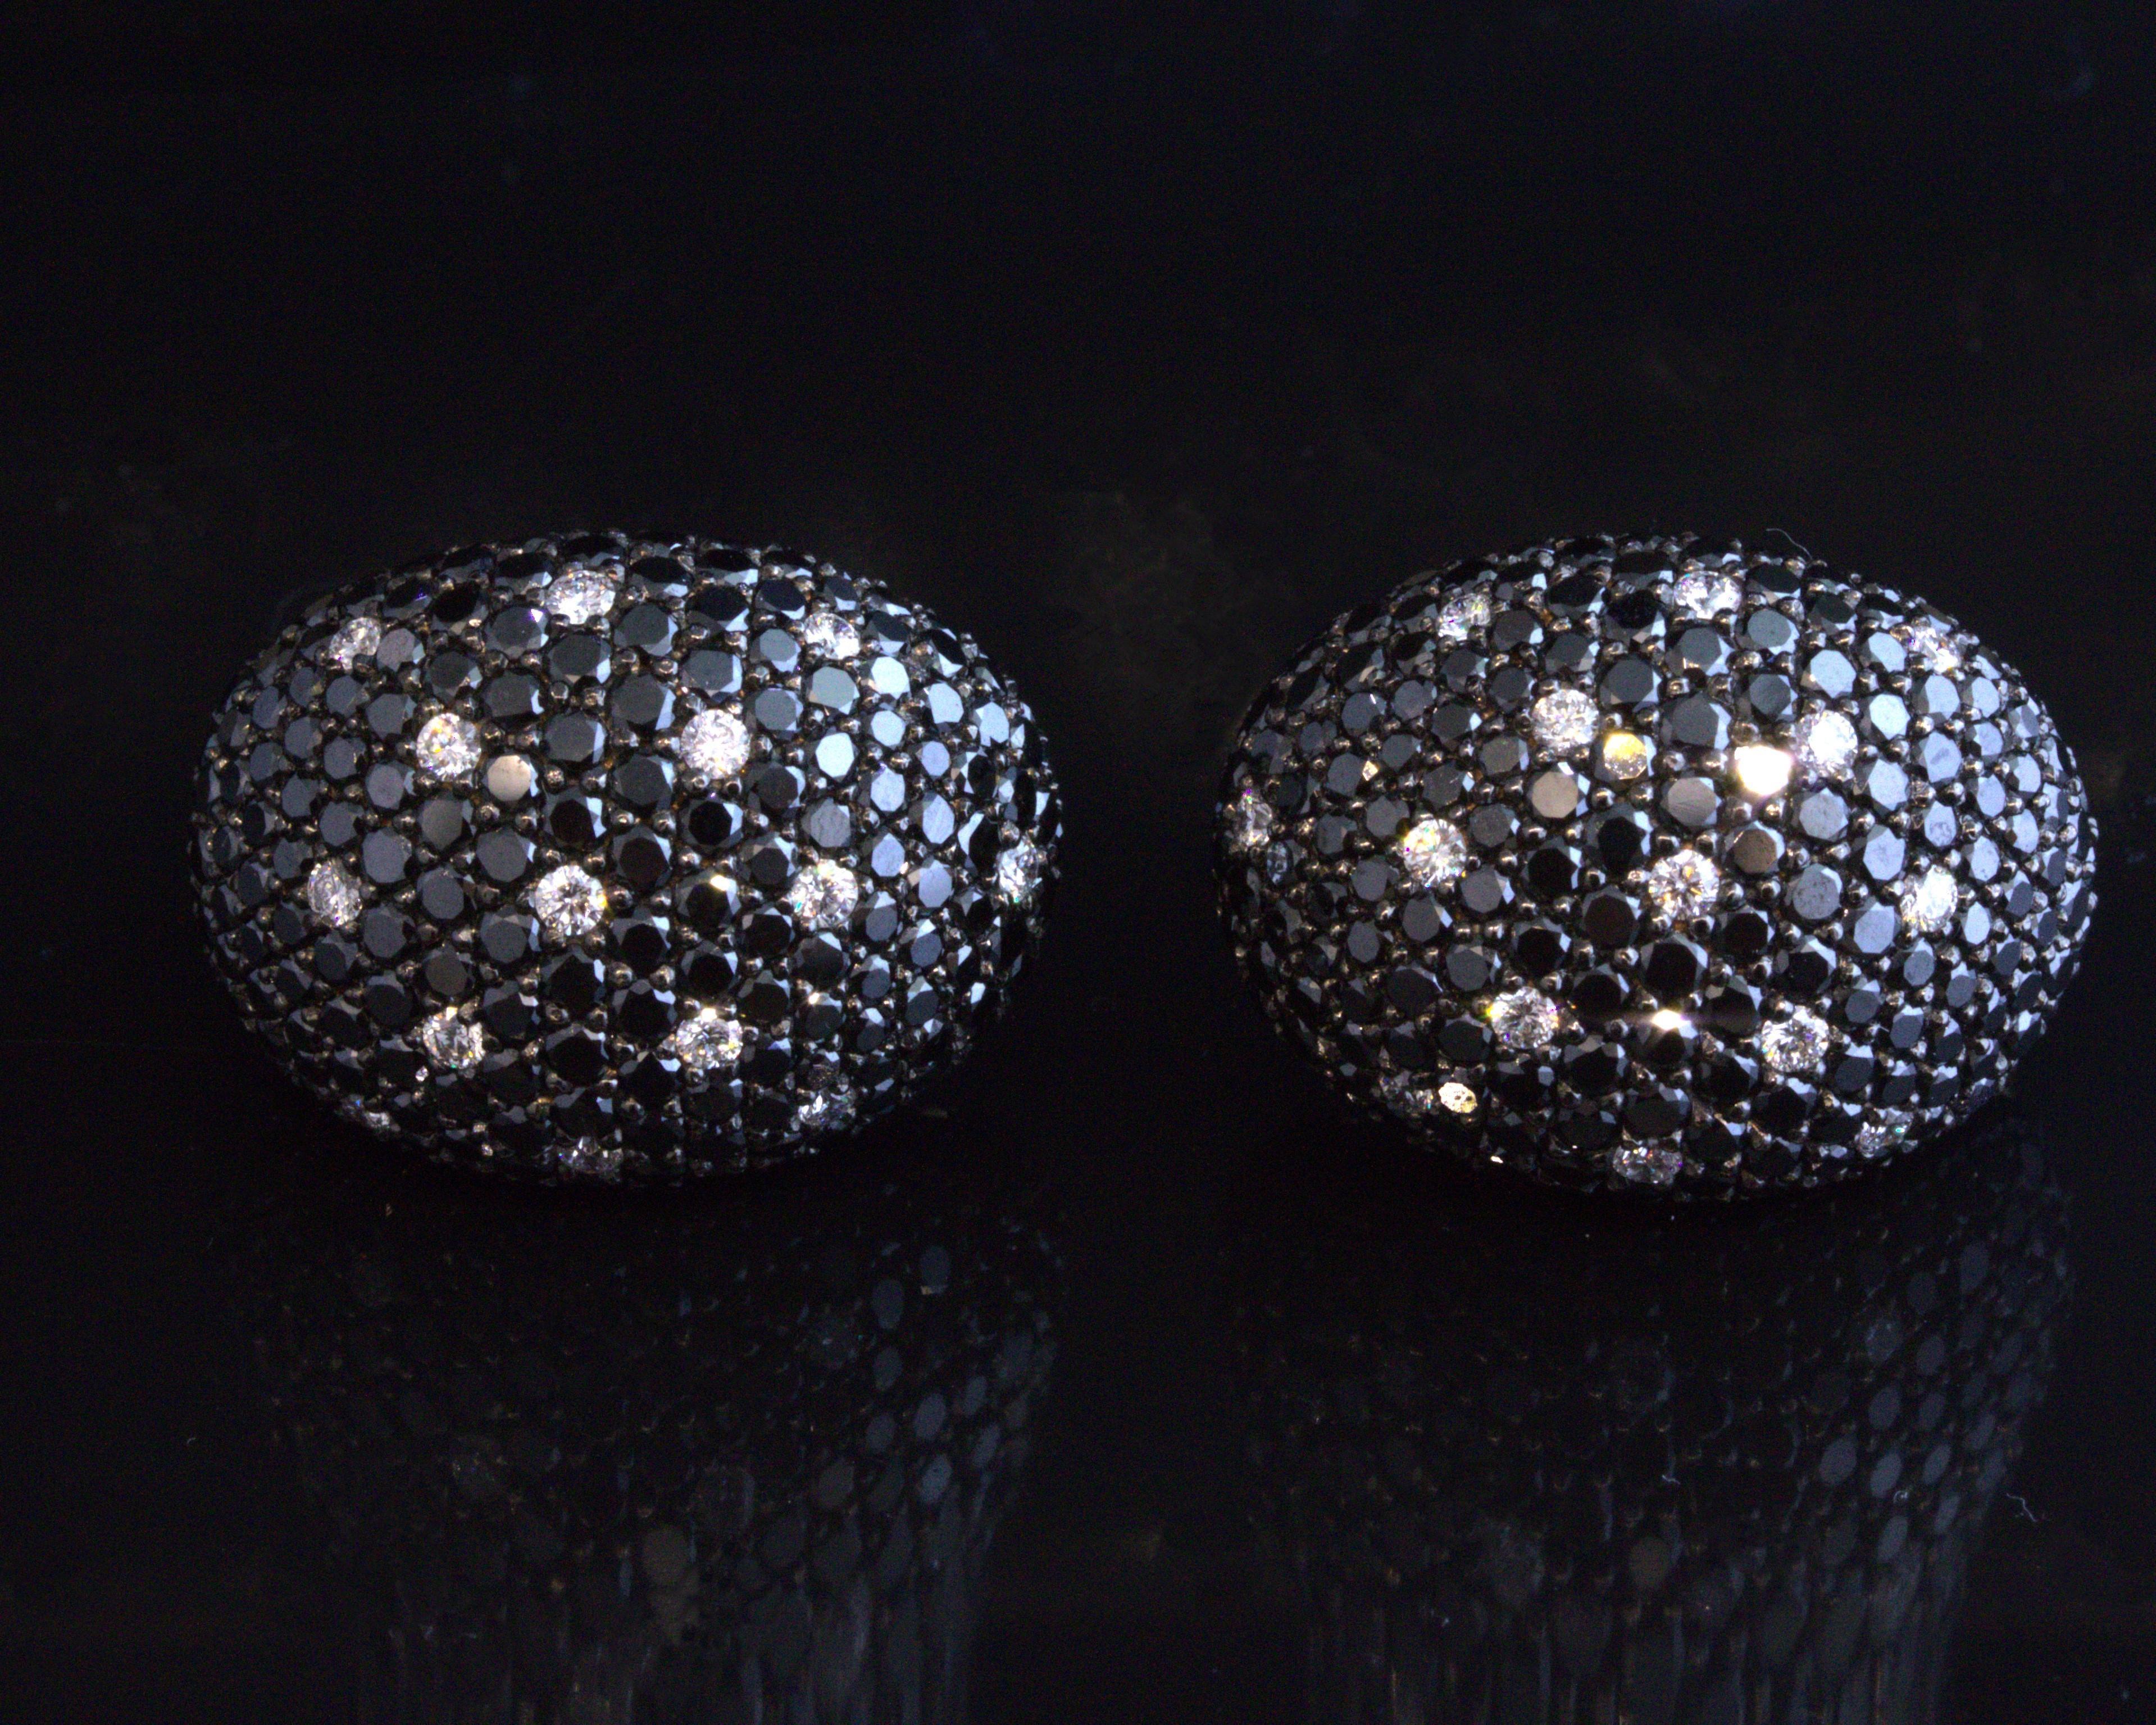 Ein sehr fein gearbeitetes Paar Ohrringe aus 18k Roségold. Sie bestehen aus 13,39 Karat schwarzen Diamanten in Pave-Fassung und 0,83 Karat strahlend weißen, runden Diamanten im Brillantschliff, die einen sehr schönen Kontrast bilden. Die Huggies